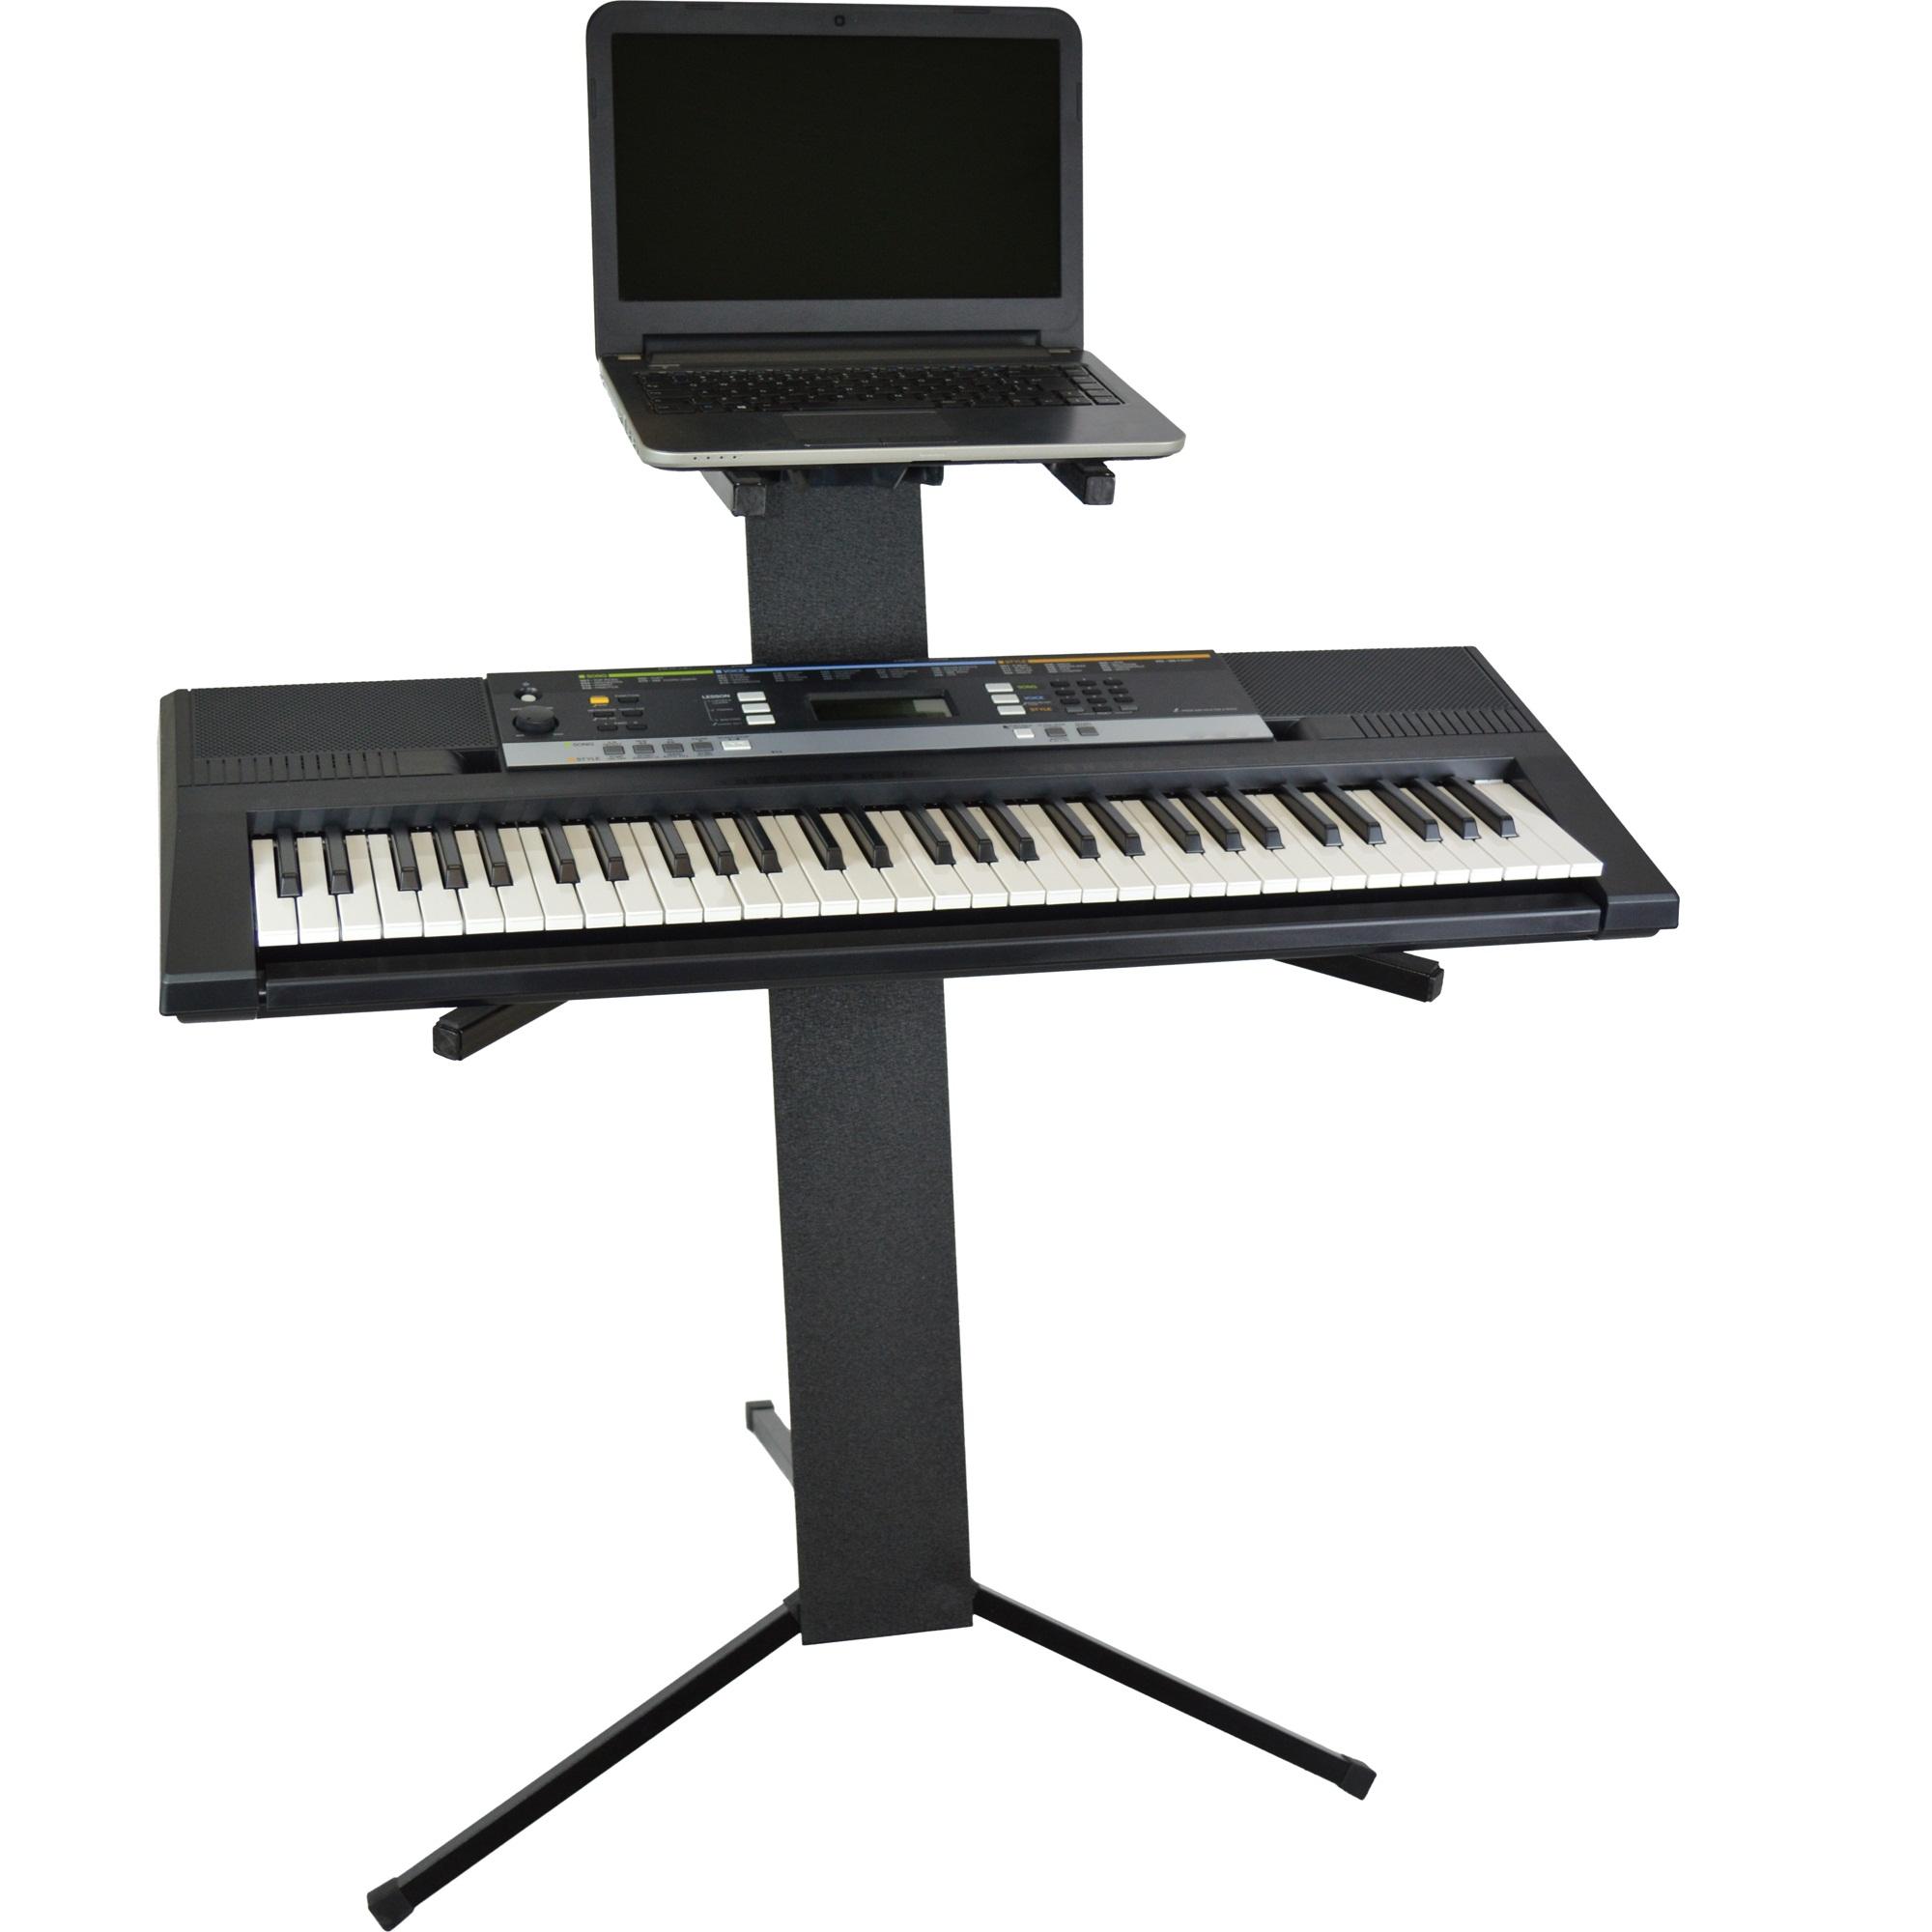 teclado segundo nível | Suporte teclado suporte piano eletrônico ajustável  - suporte instrumento musical multifuncional portátil Iytefeki